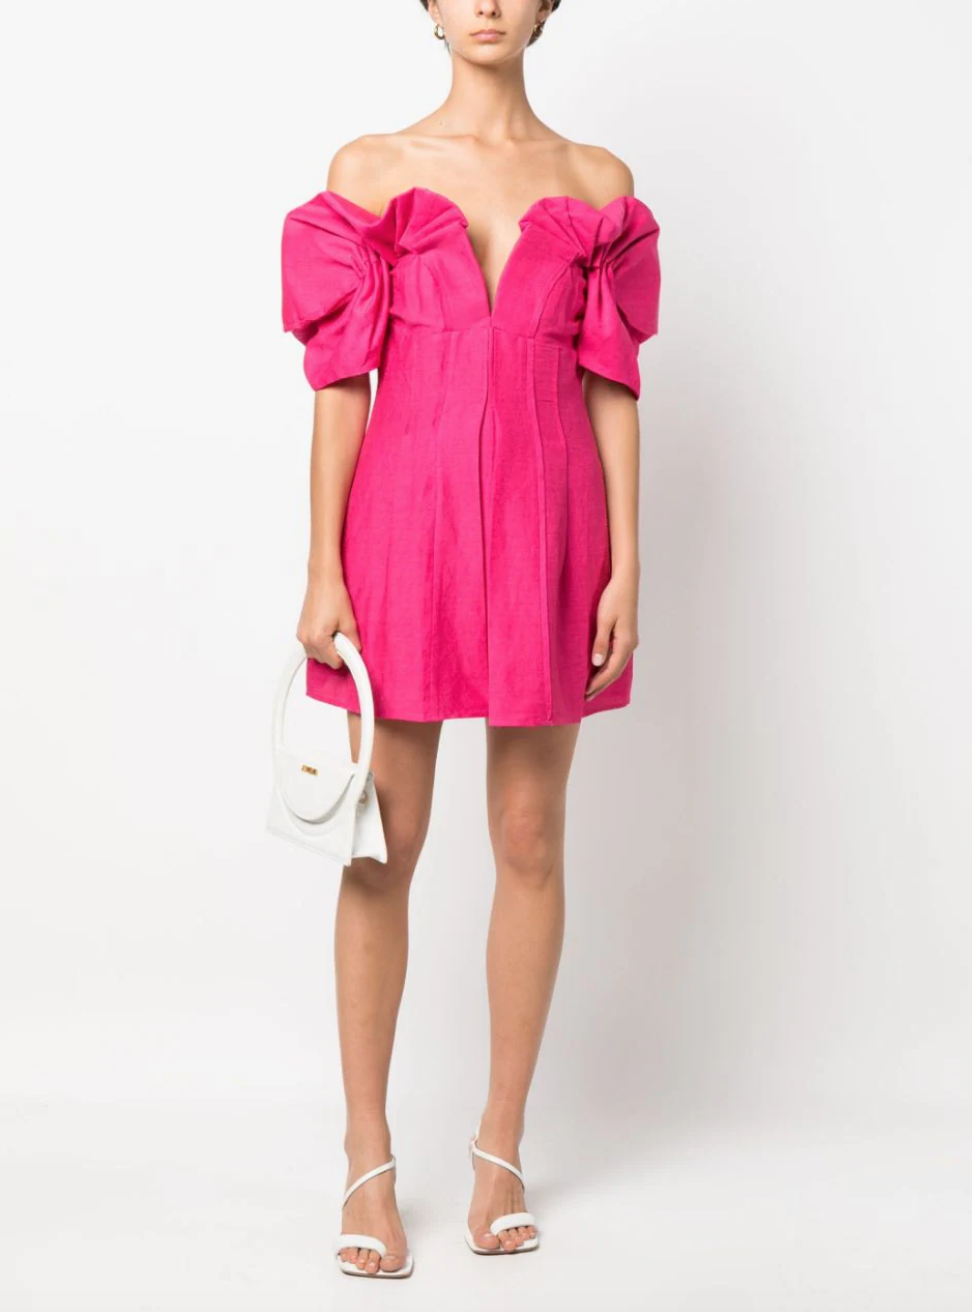 Danielle Olivera's Pink Off The Shoulder Dress